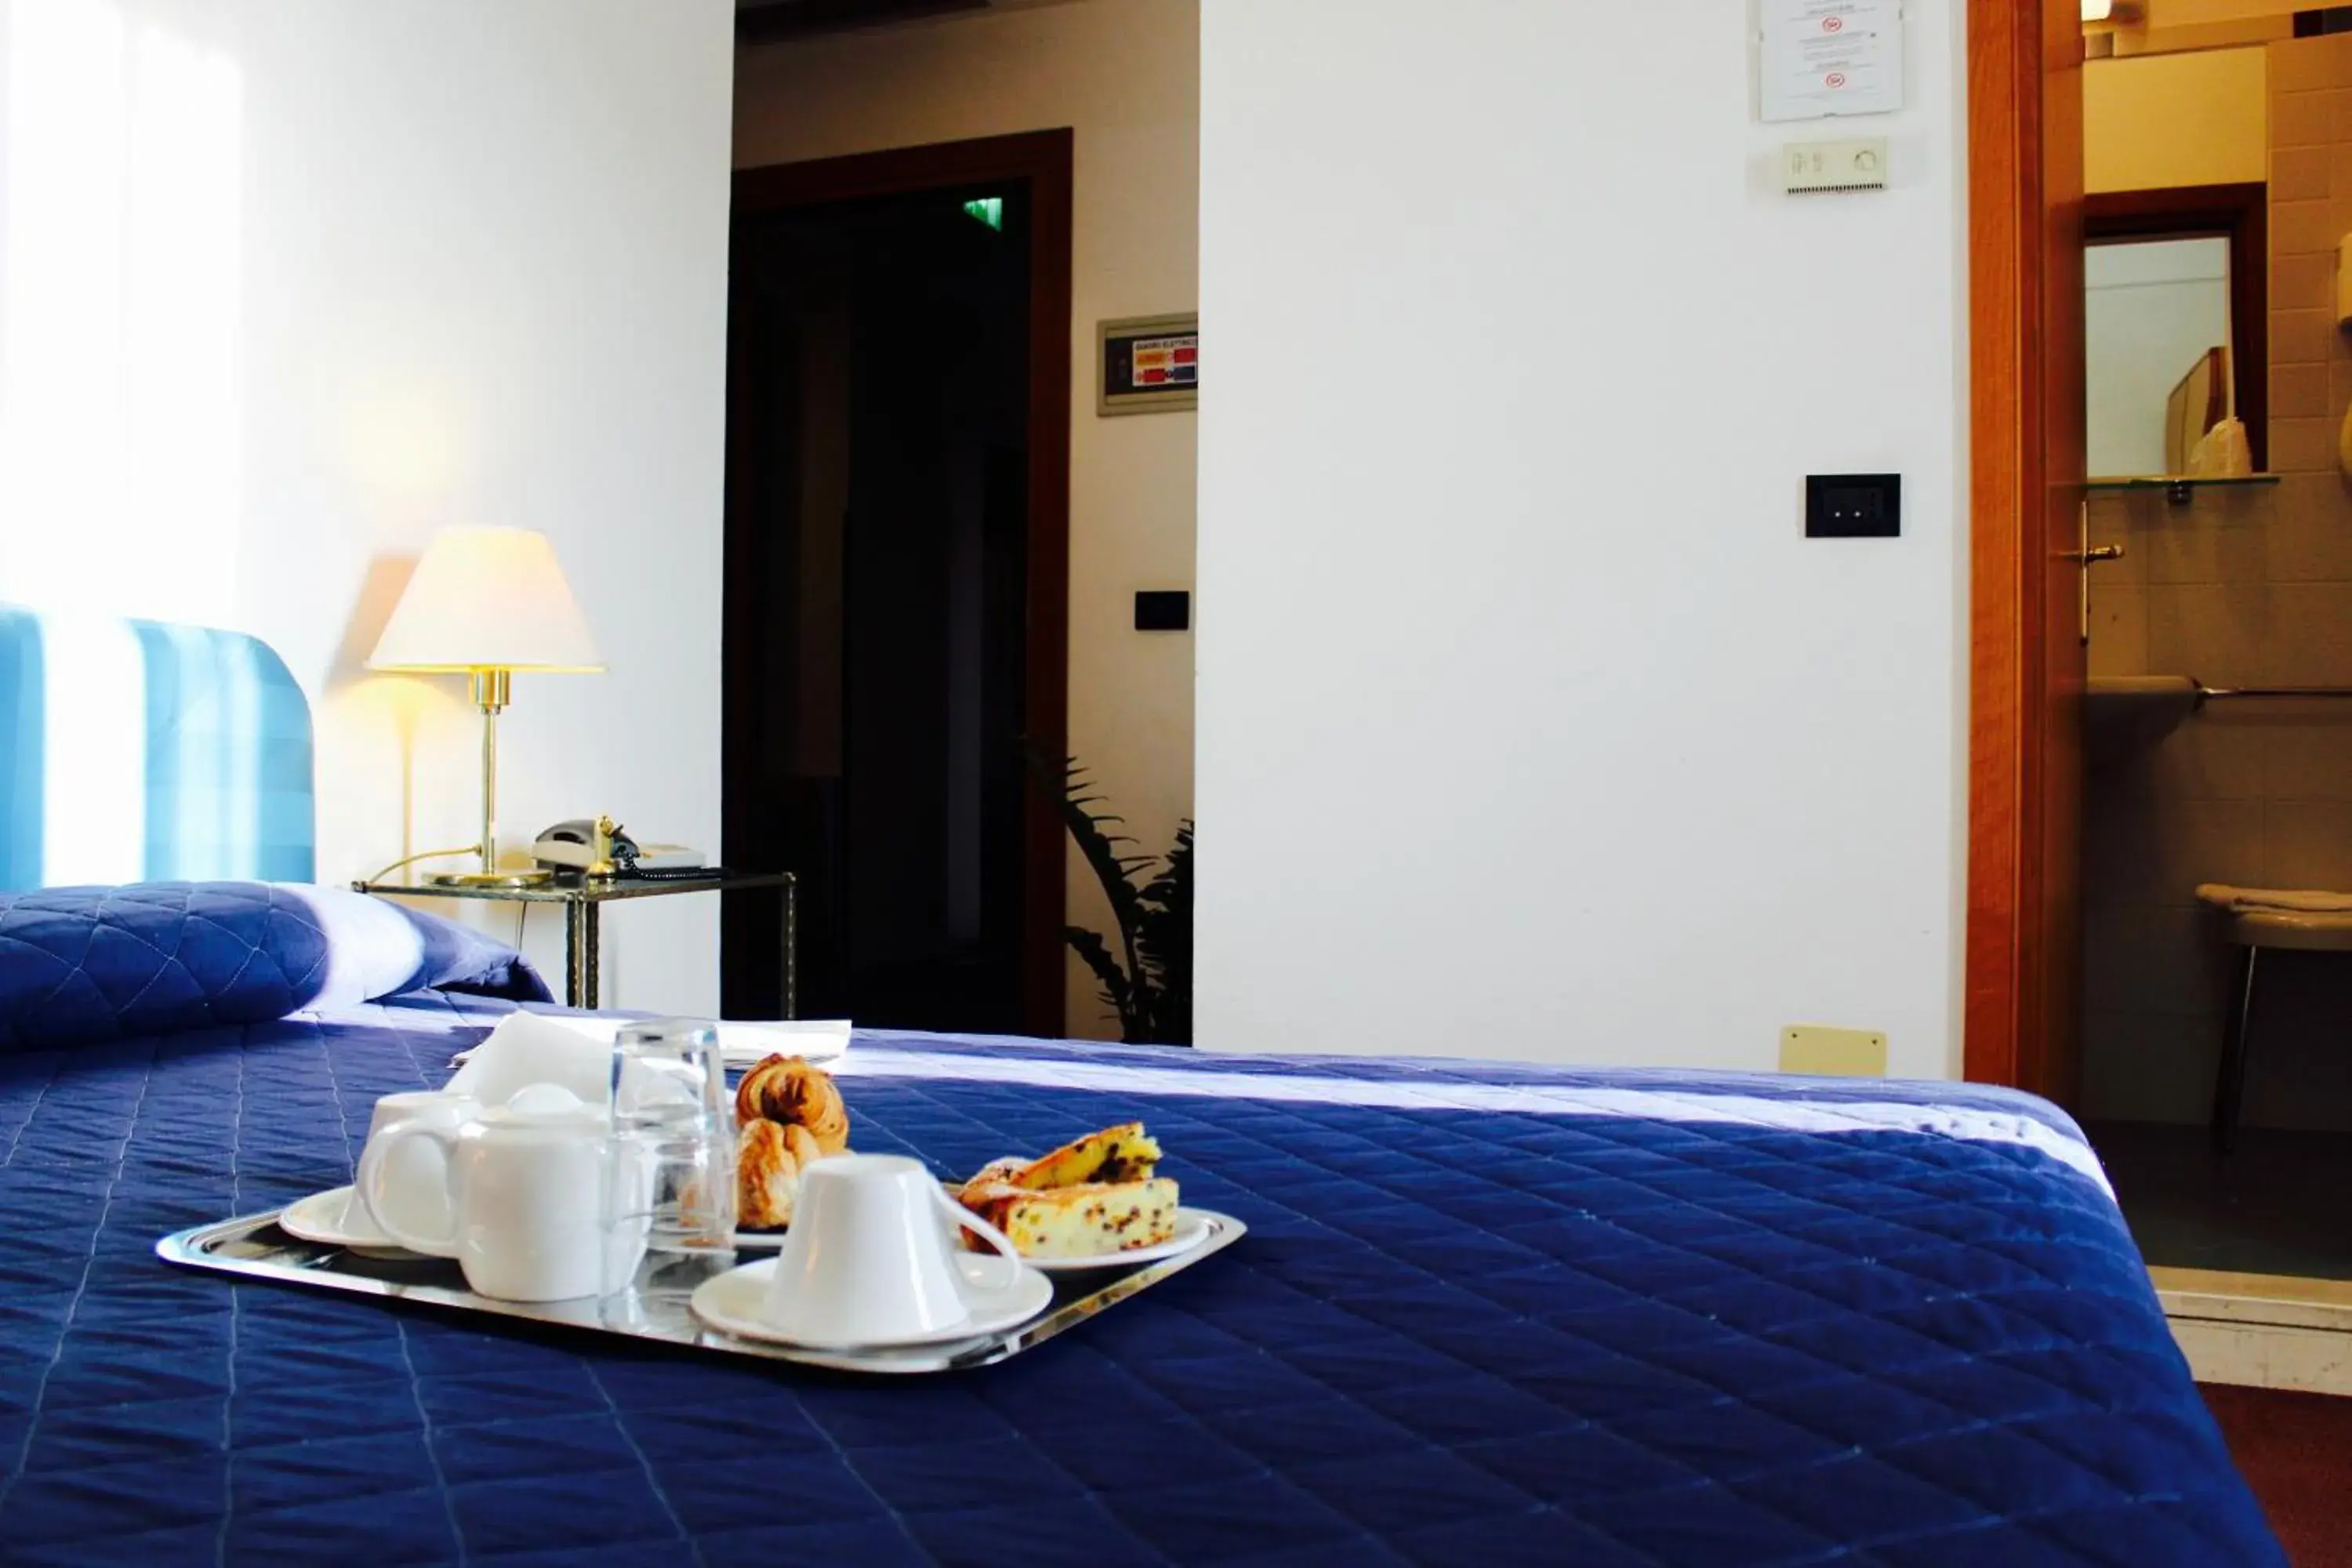 Breakfast in Hotel Arcangelo